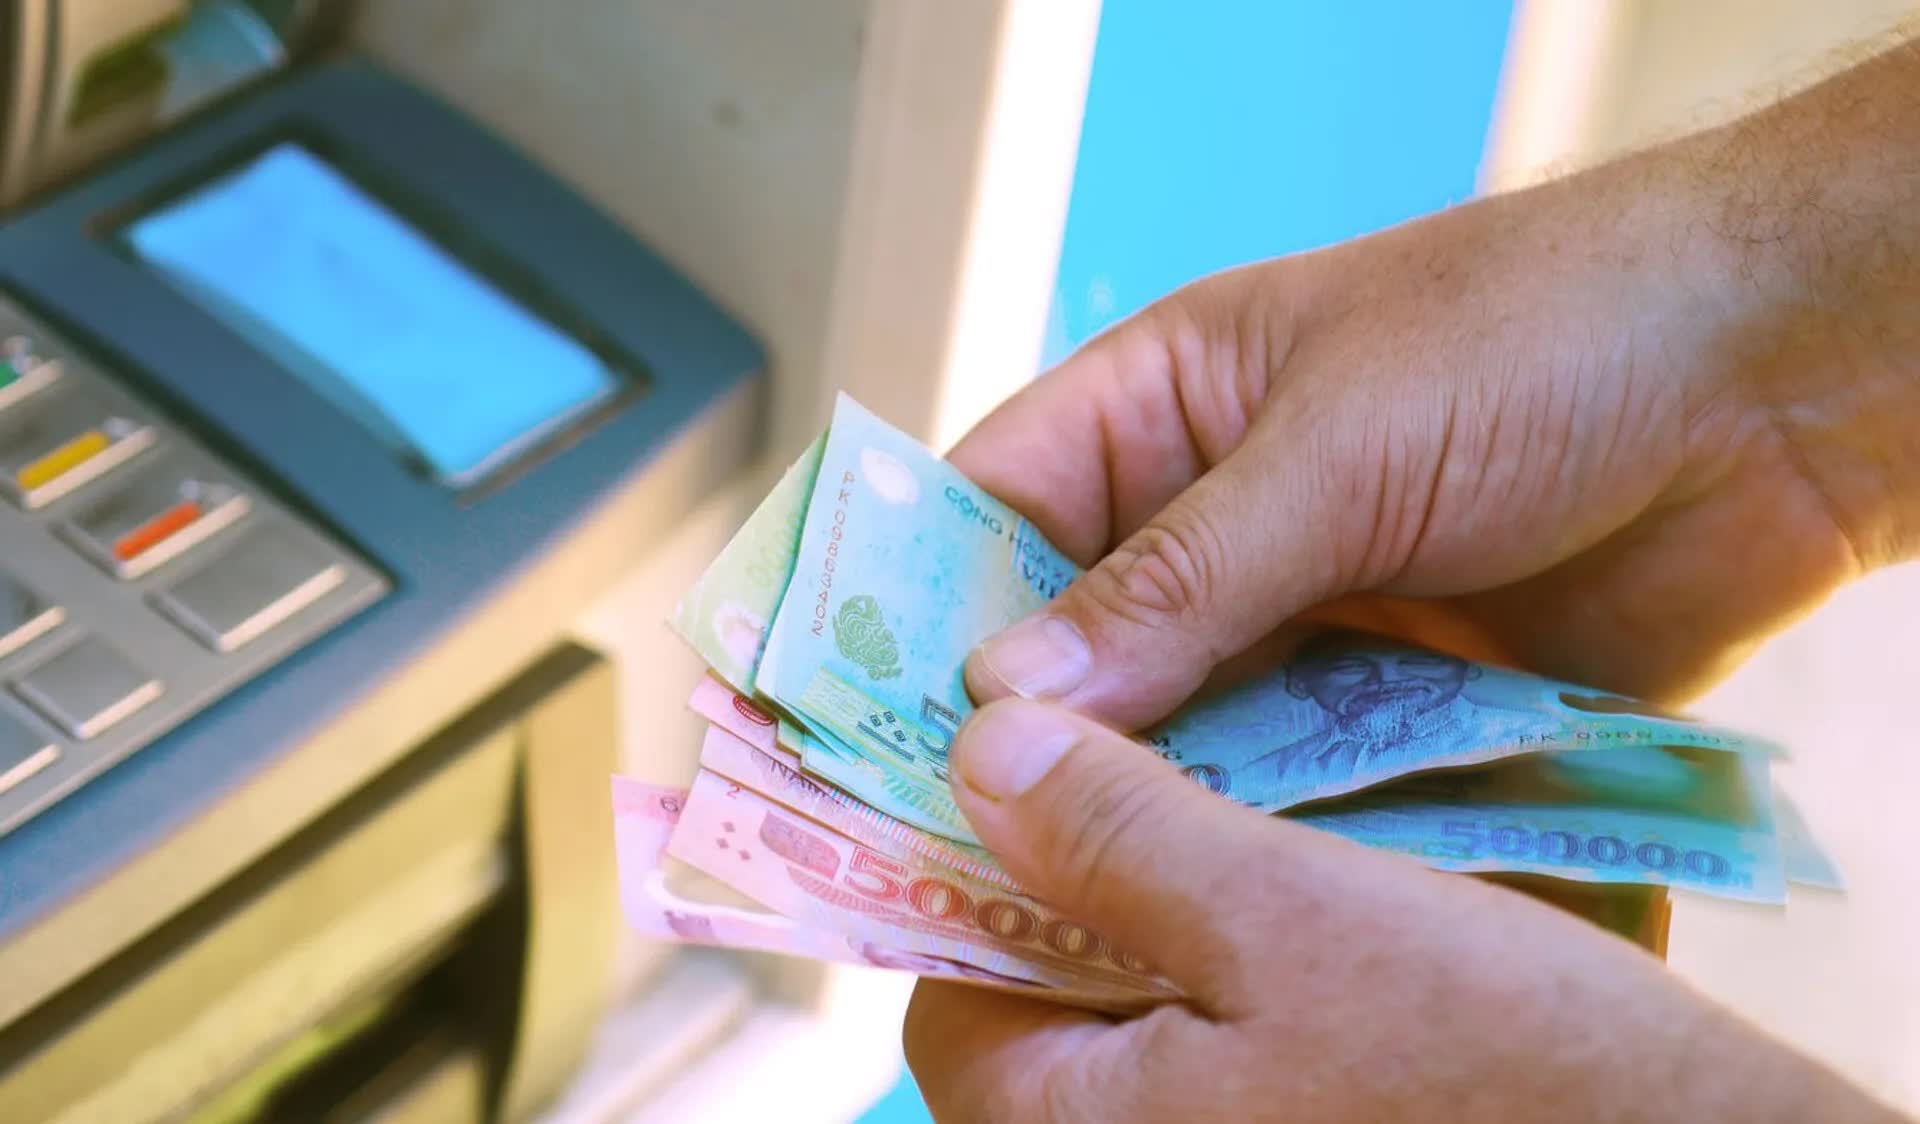 Chi tiết cách rút tiền bằng thẻ Căn cước công dân gắn chip tại ATM - Ảnh 3.